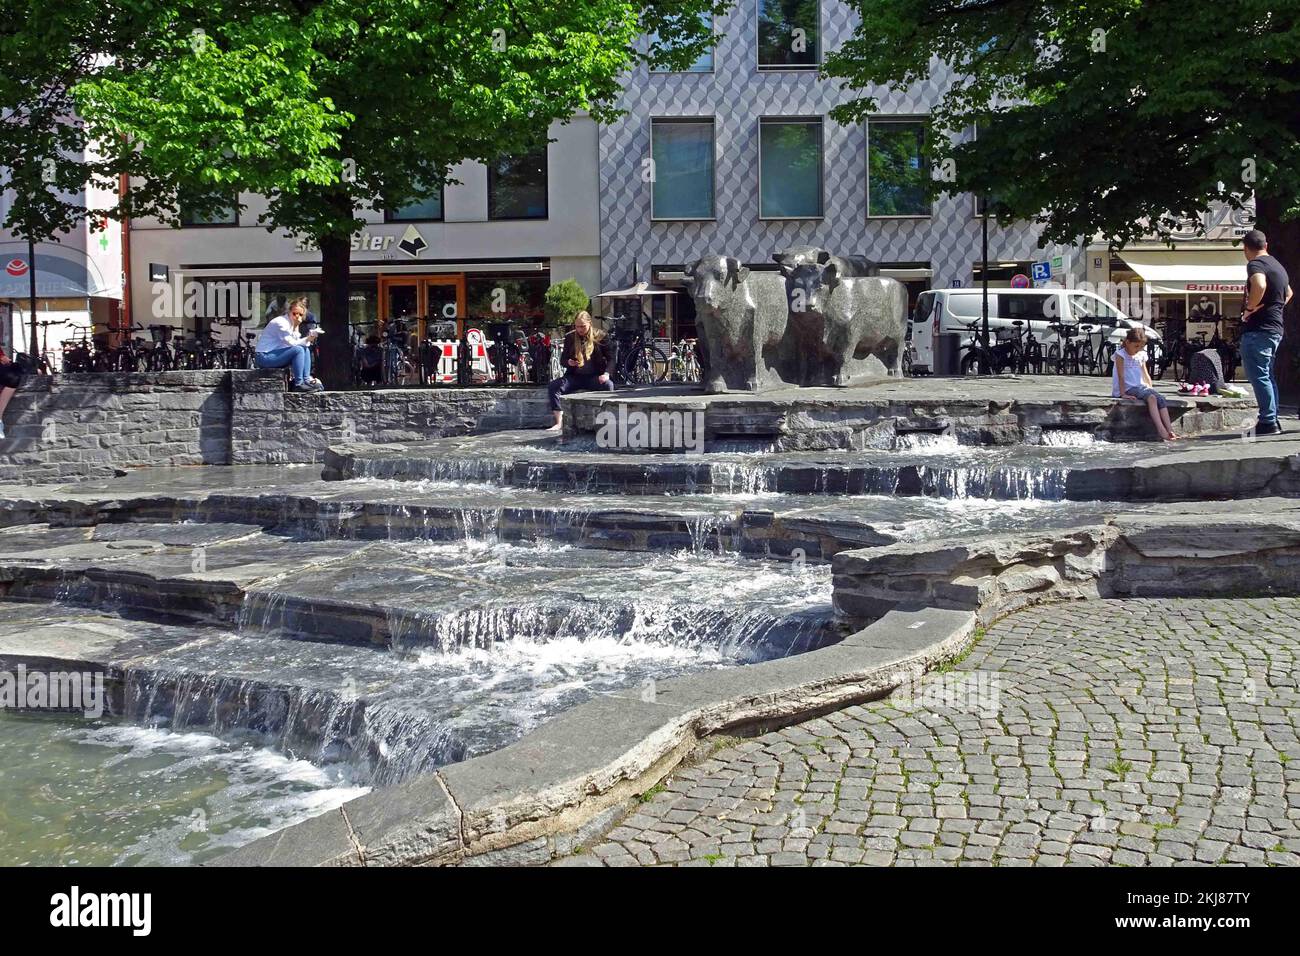 Deutschland, Bayern, München: Der Rindermarkt, früher der Rindermarkt der Stadt, mit seinem terrassenförmigen Brunnen und Bronzerindern. Stockfoto